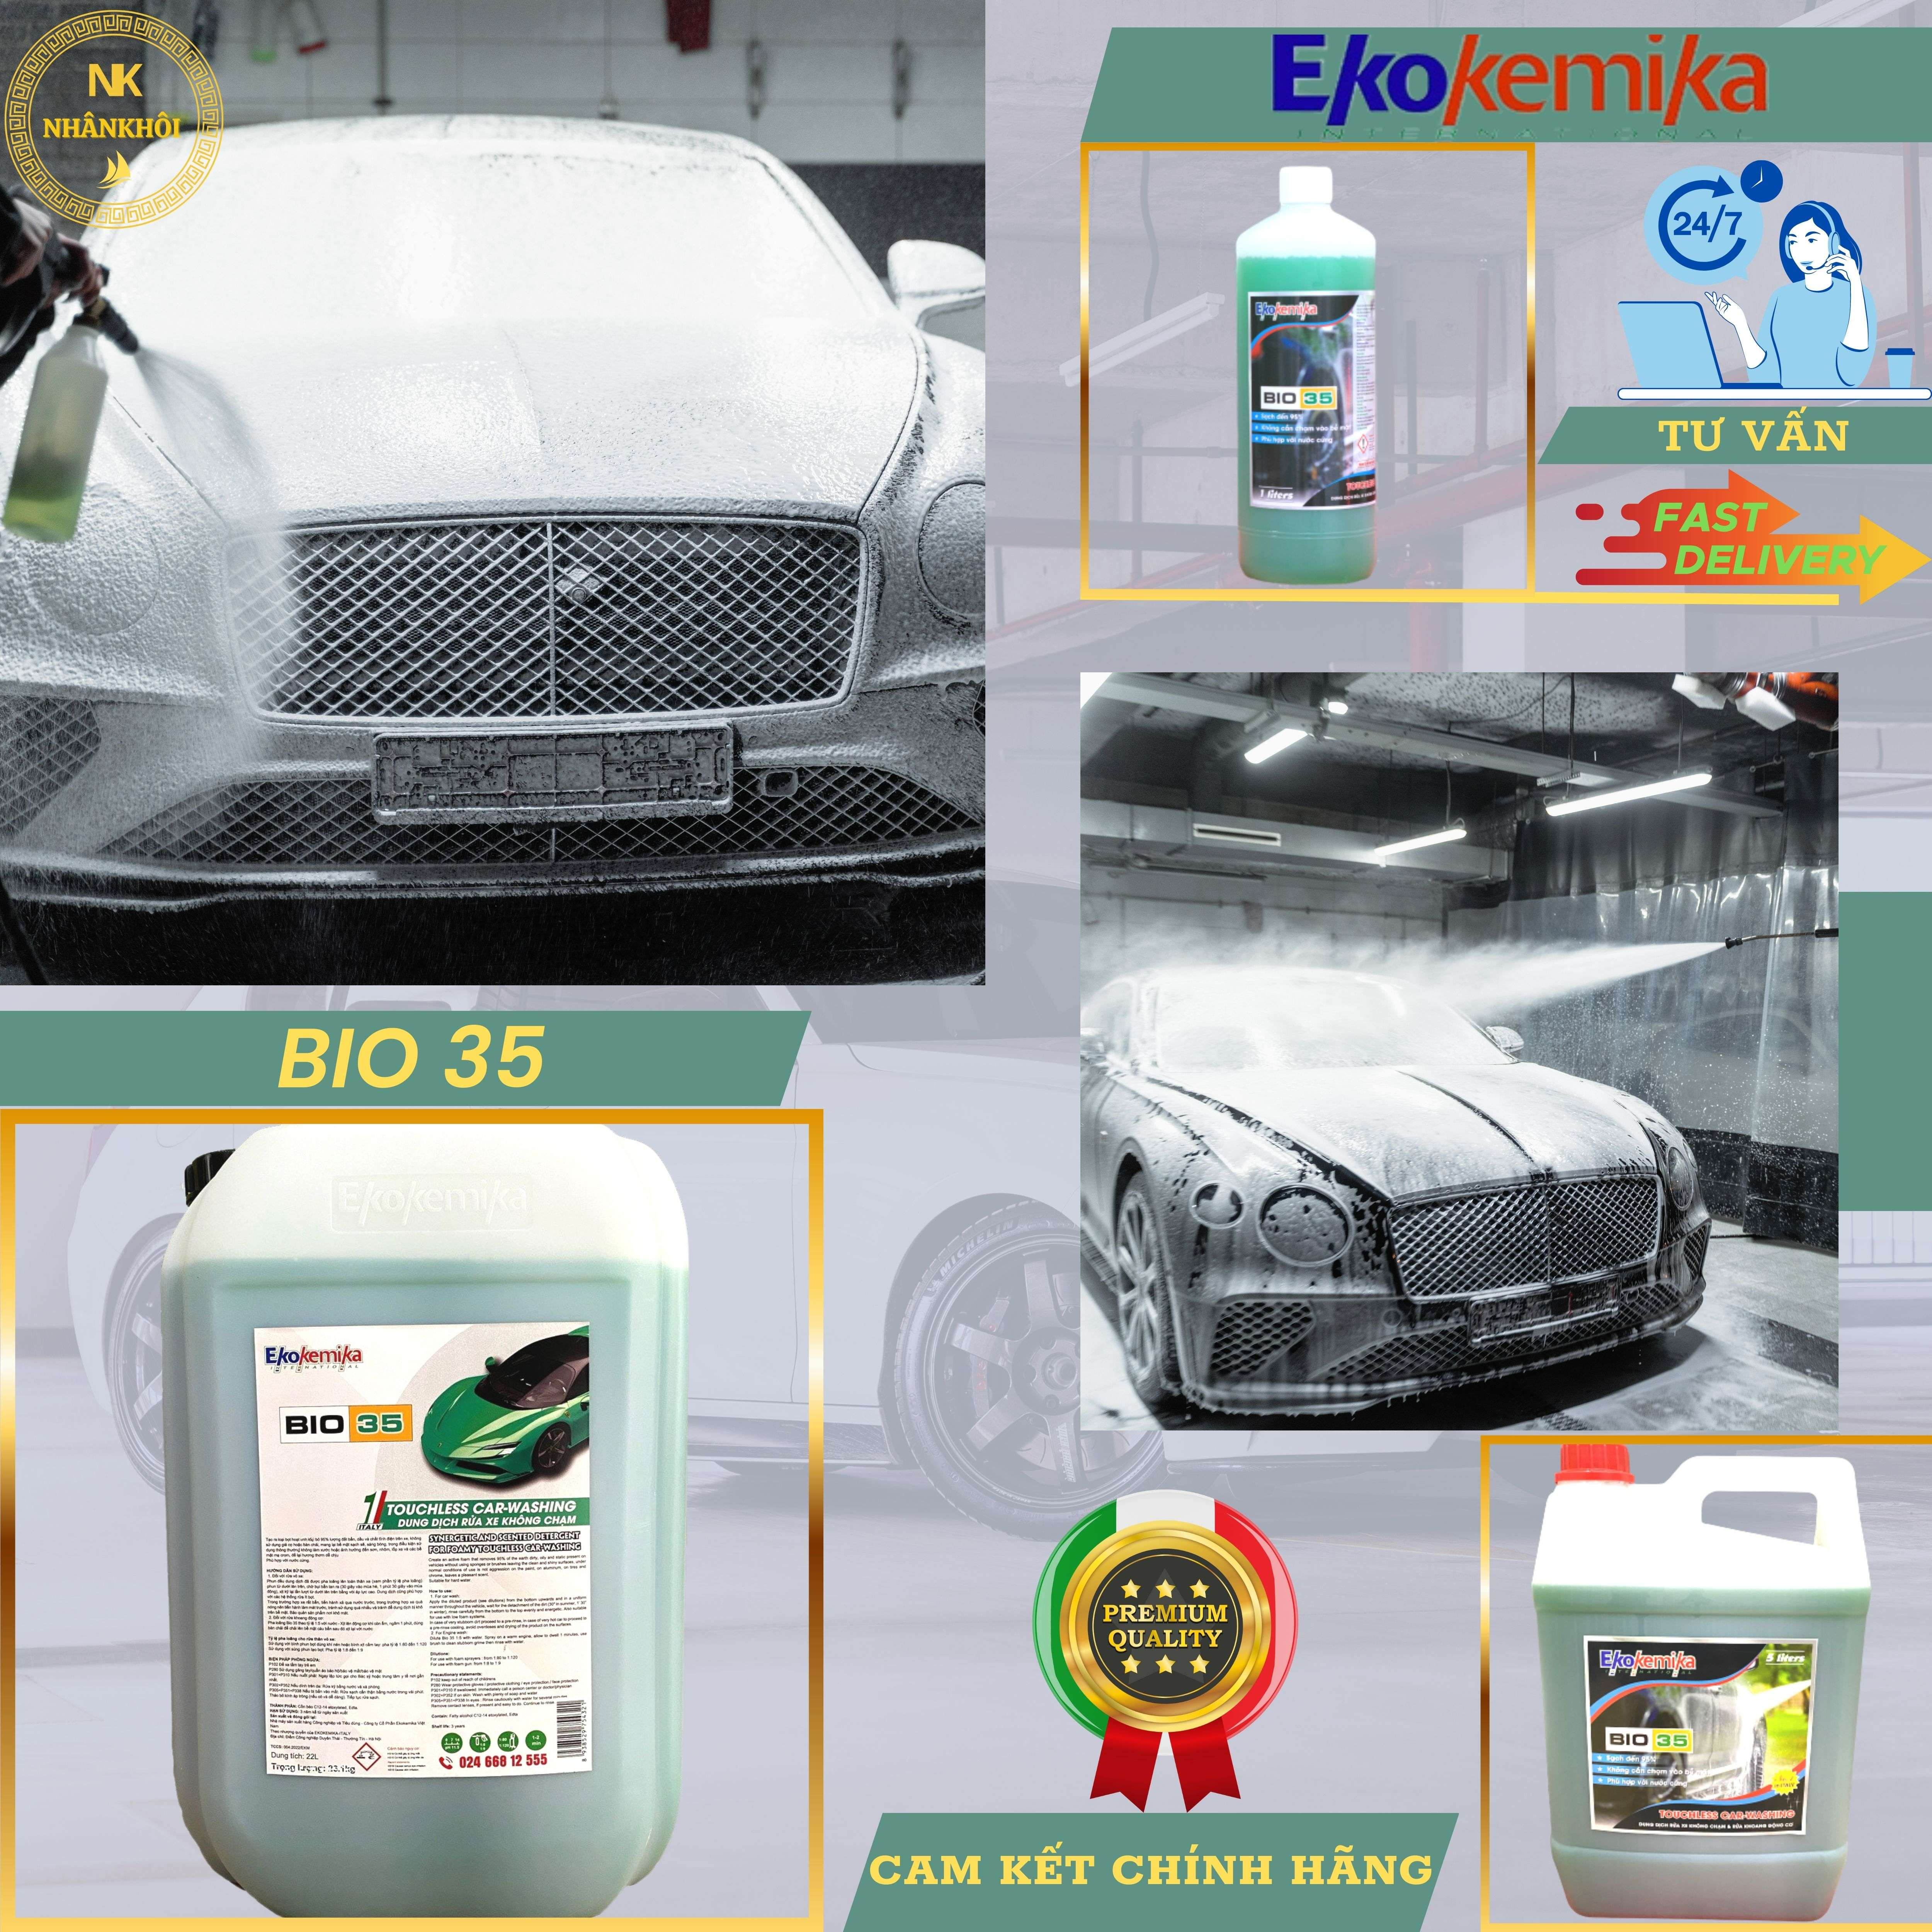 Bio 35 - 5 lít - Dung dịch rửa xe không chạm - Nước rửa xe bọt tuyết - Ekokemika